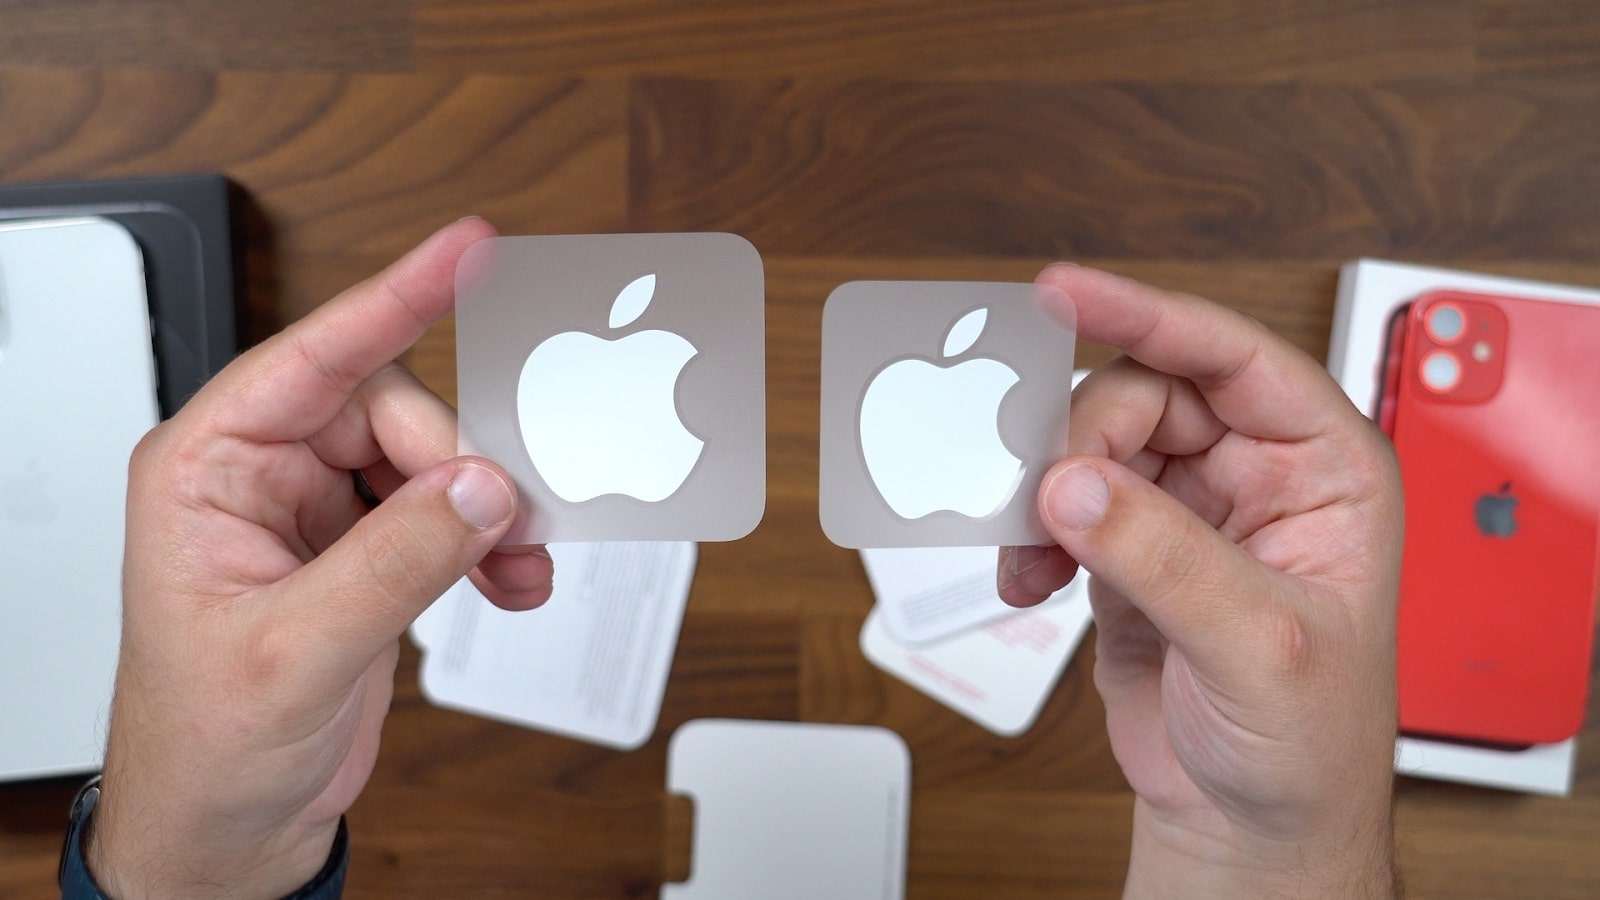 Đây chính là lý do vì sao Apple luôn tặng kèm sticker in hình logo ...